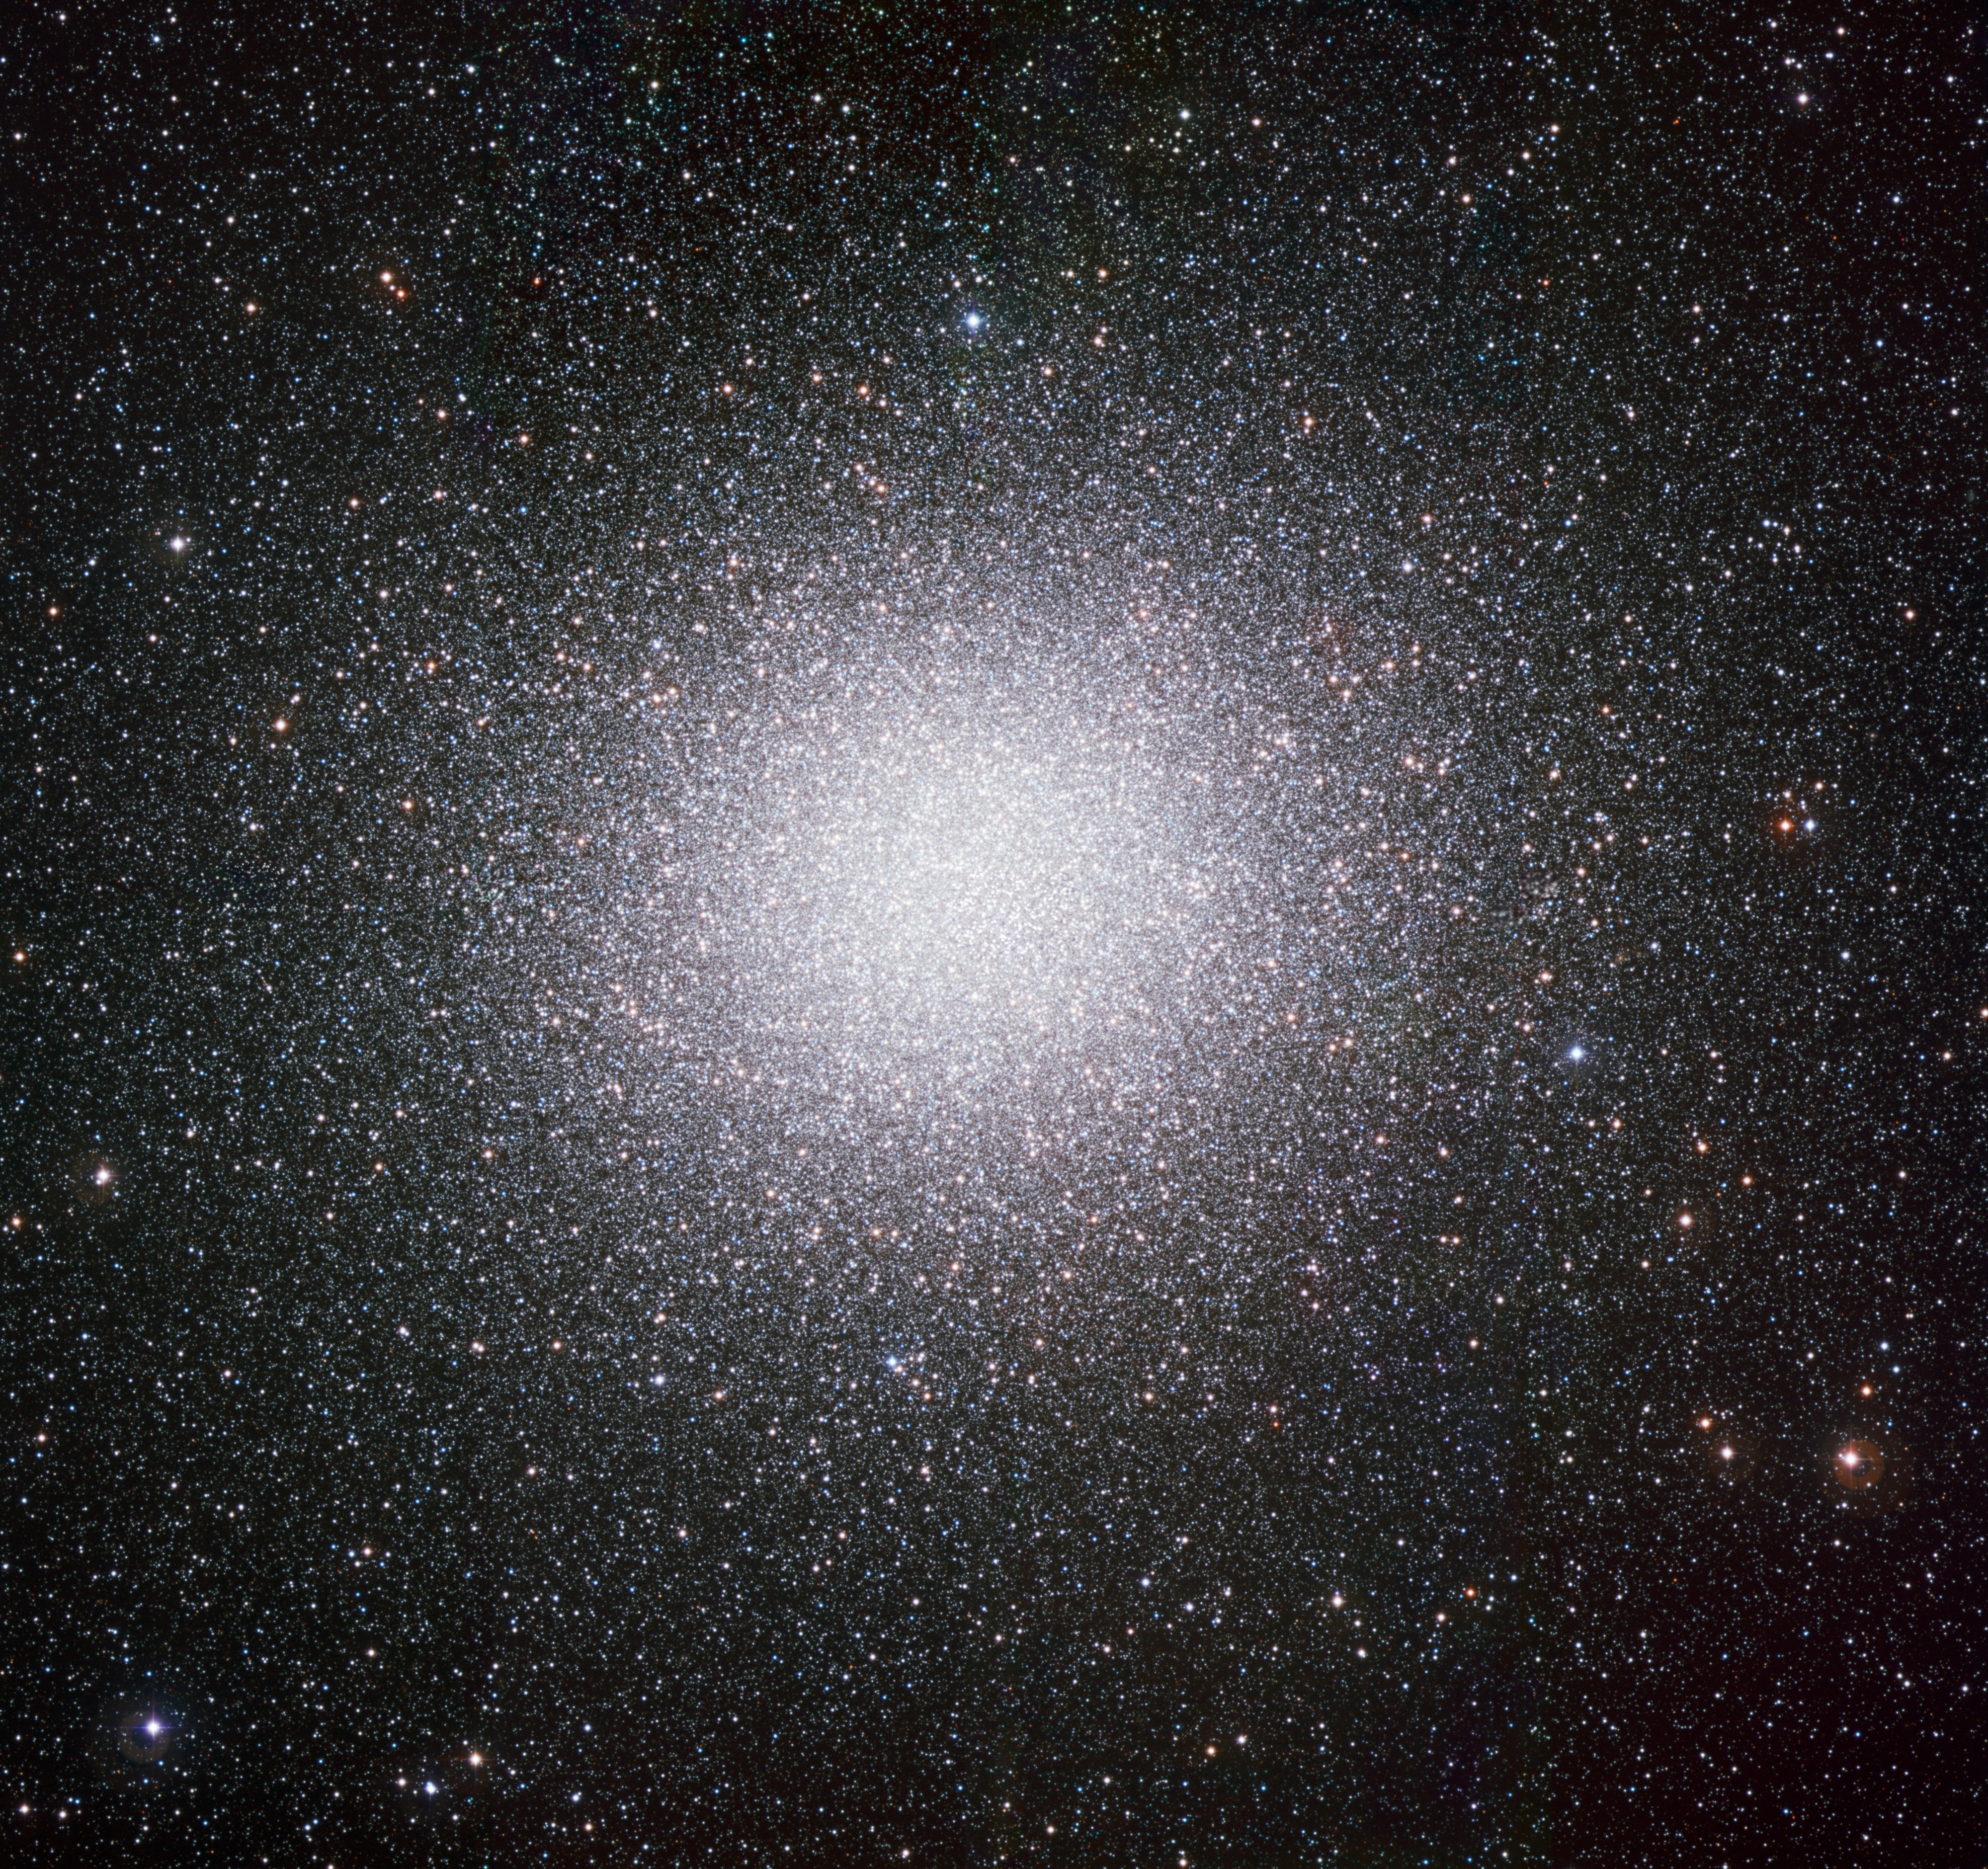 Omega Centauri by ESO